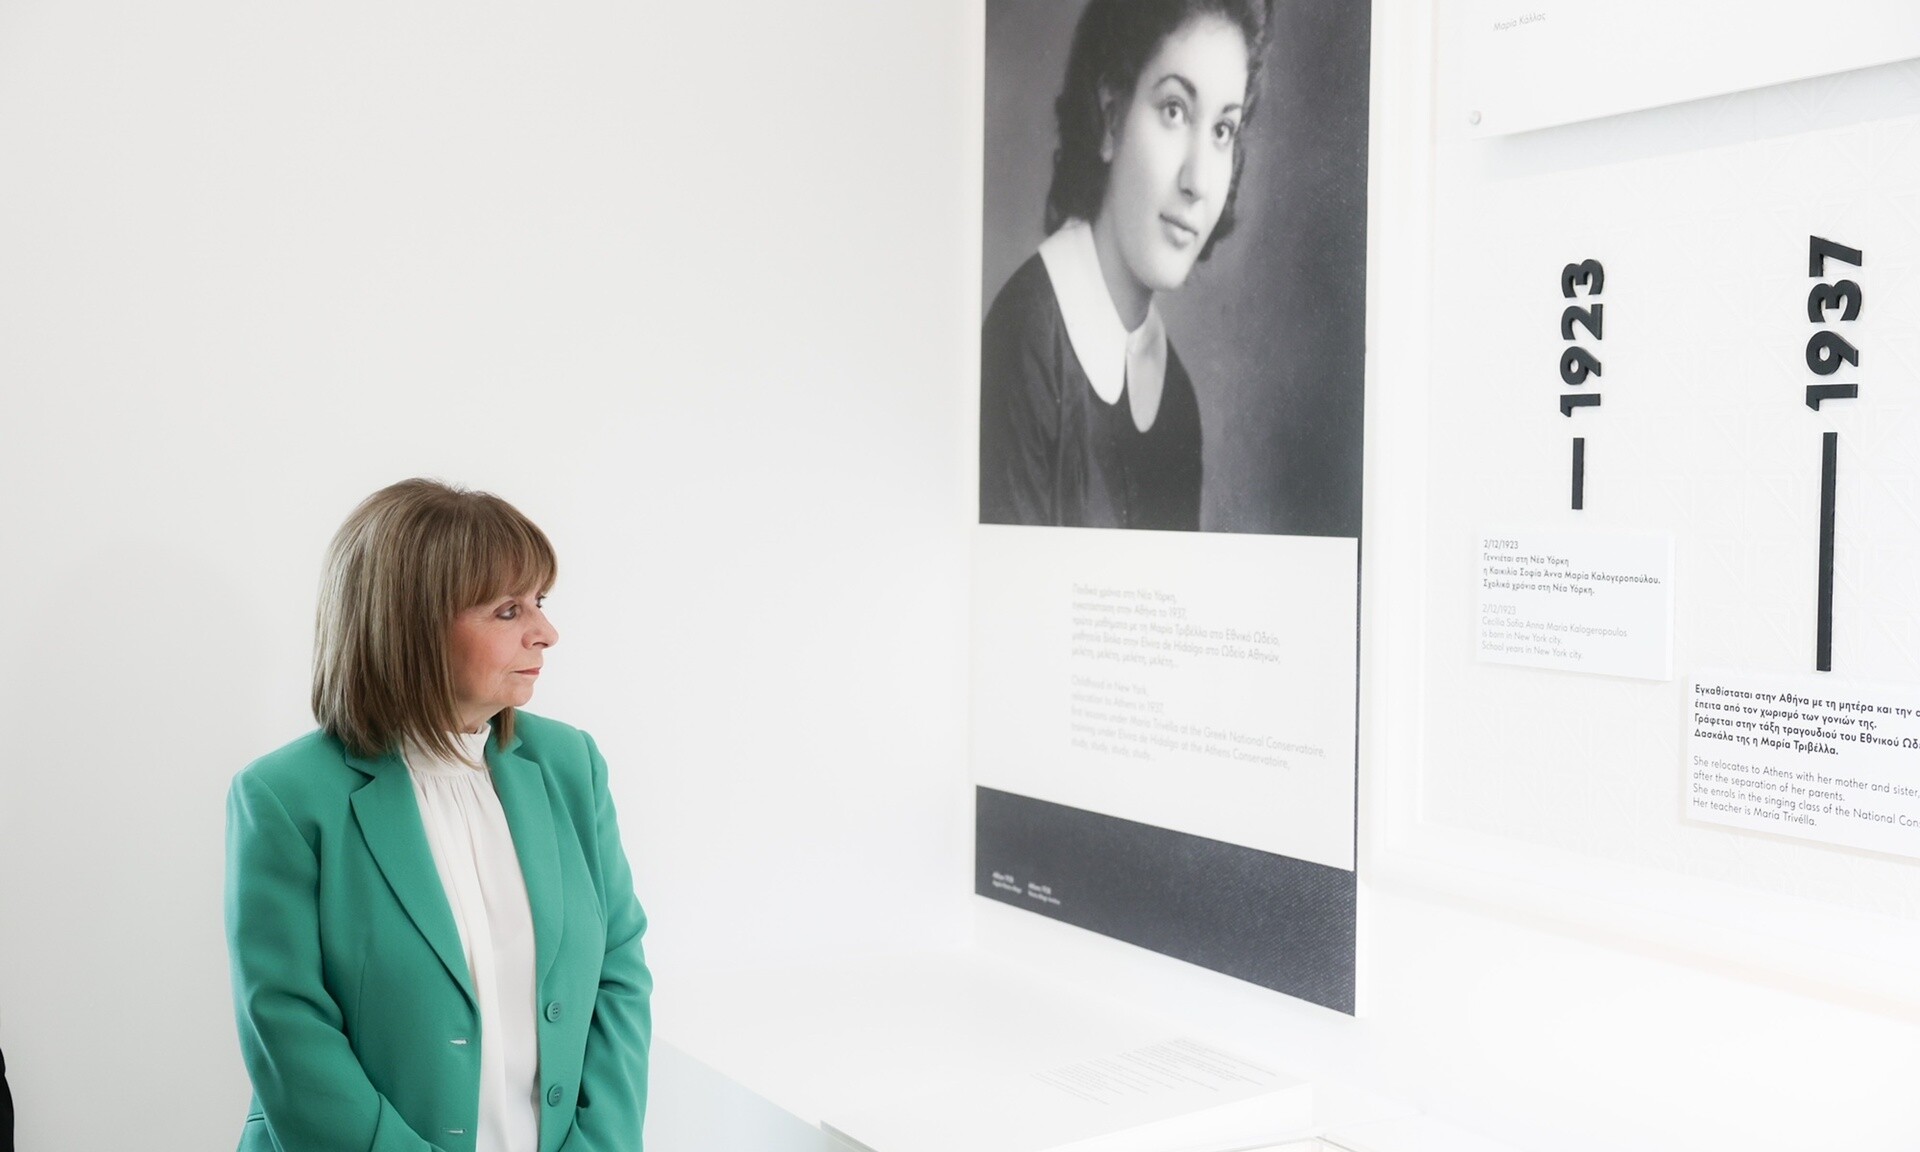 Κατερίνα Σακελλαροπούλου: Ξεναγήθηκε στο Μουσείο Μαρία Κάλλας